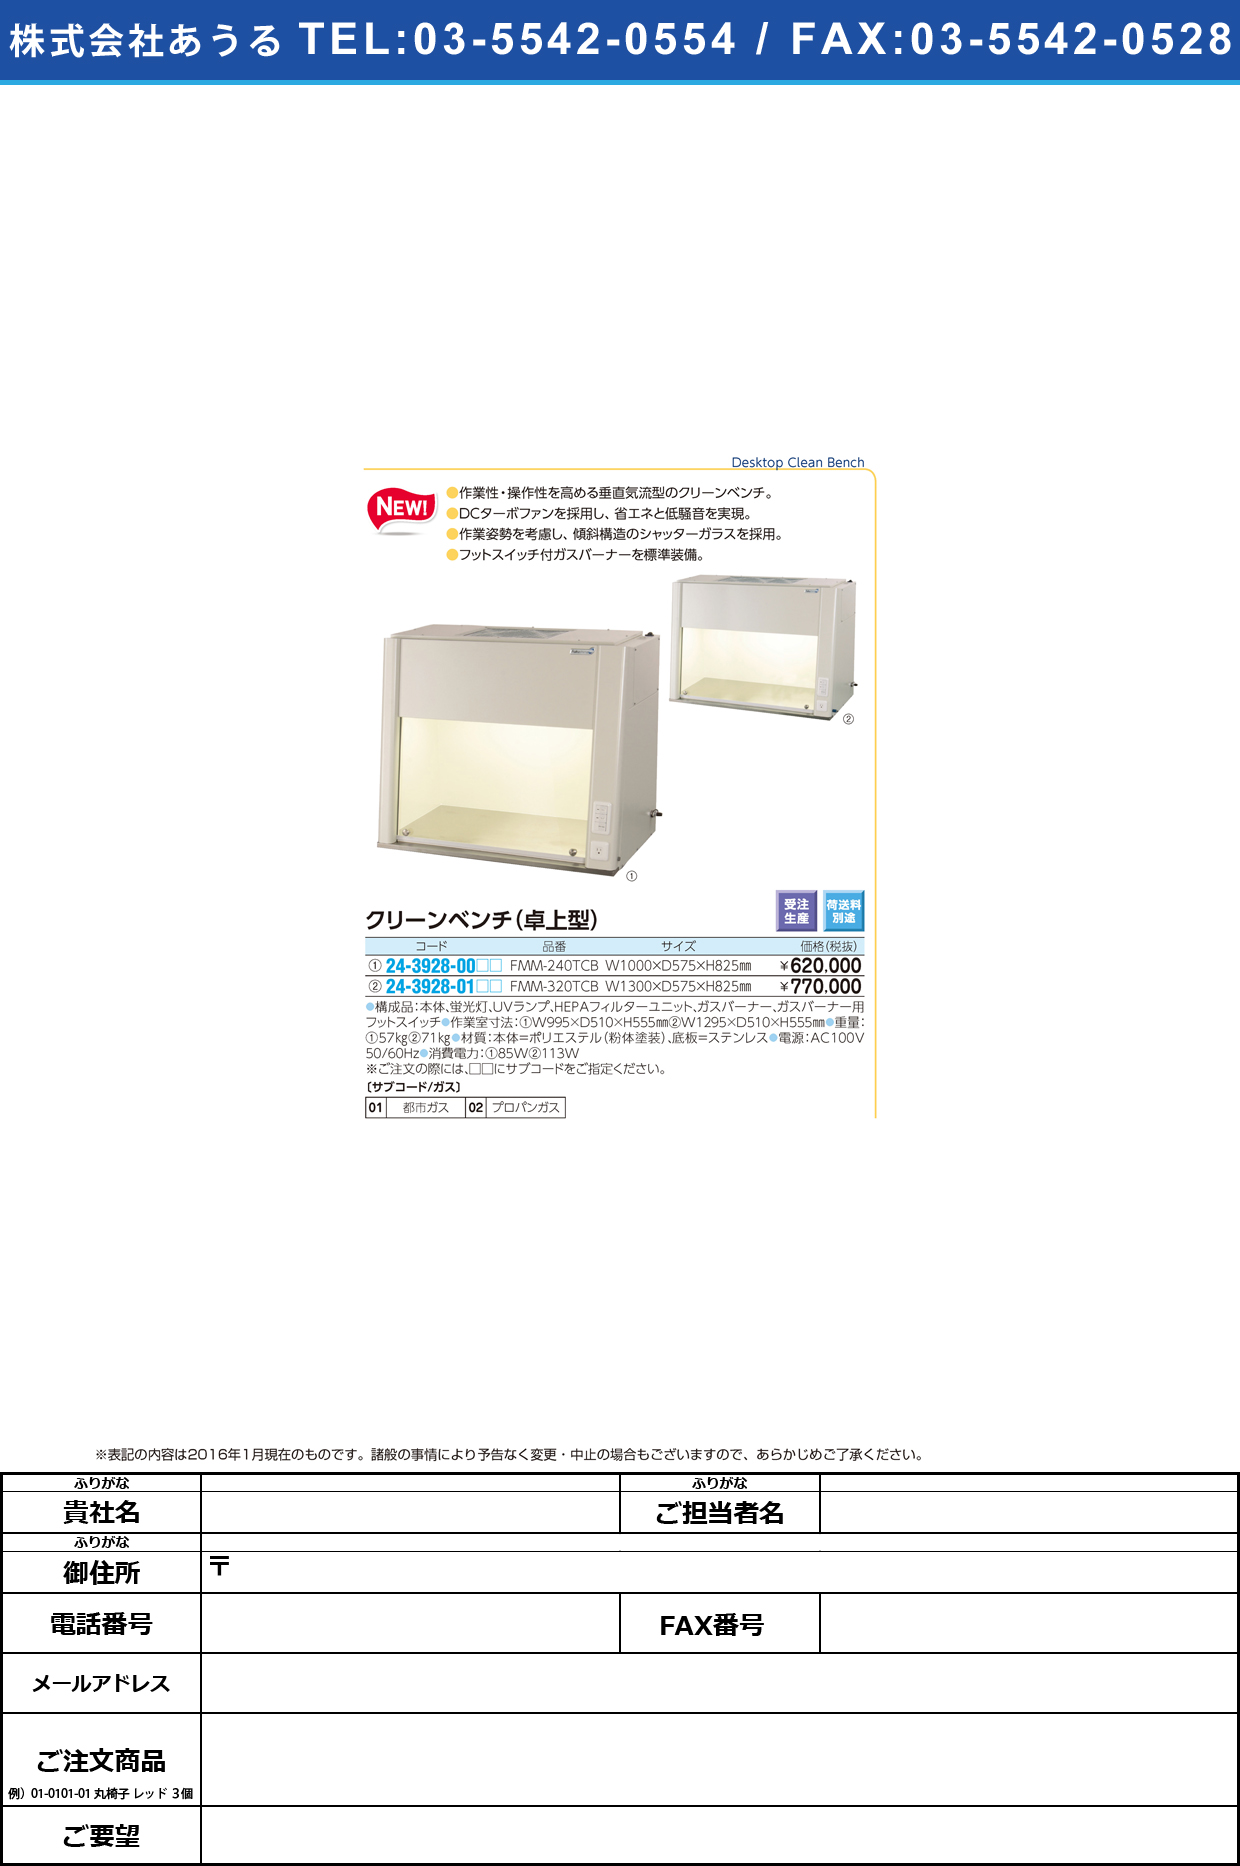 (24-3928-01)卓上型クリーンベンチ ﾀｸｼﾞｮｳｶﾞﾀｸﾘｰﾝﾍﾞﾝﾁ FMM-320TCB(W1300)【1台単位】【2016年カタログ商品】